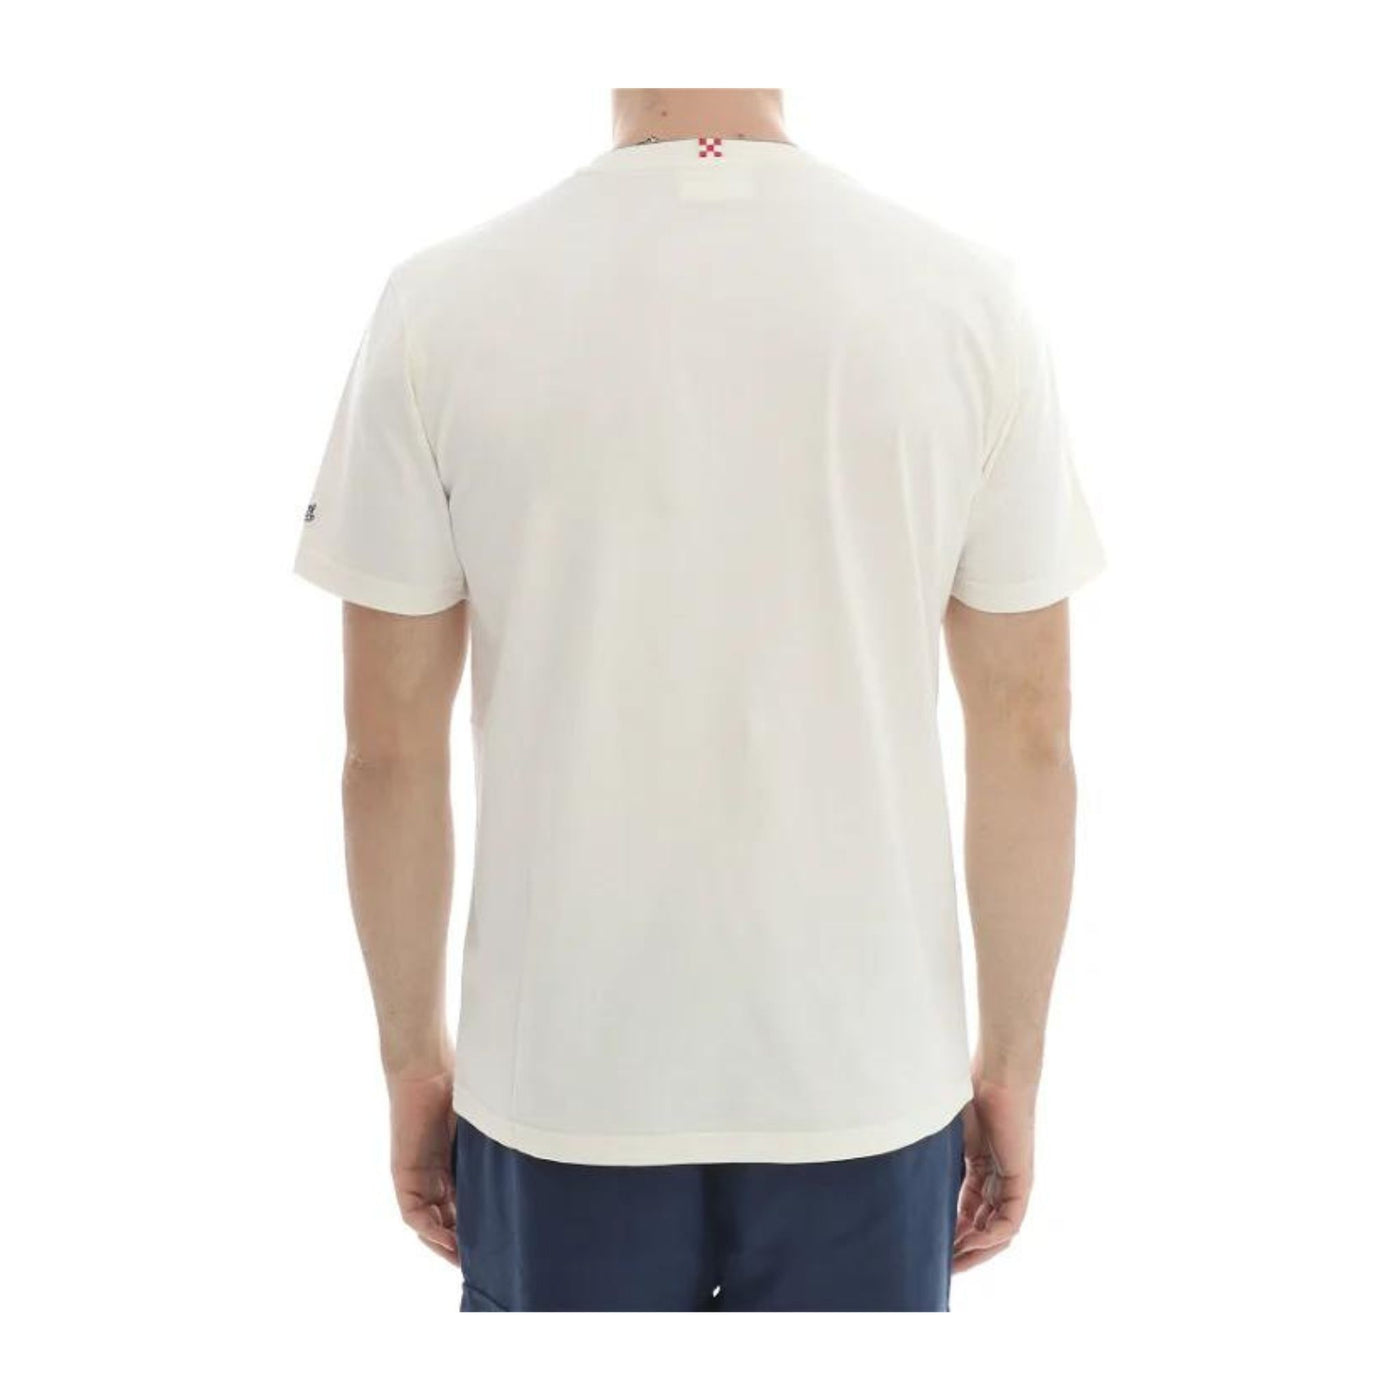 T-shirt Uomo a girocollo con maxi stampa sul petto e logo ricamato sulla manica